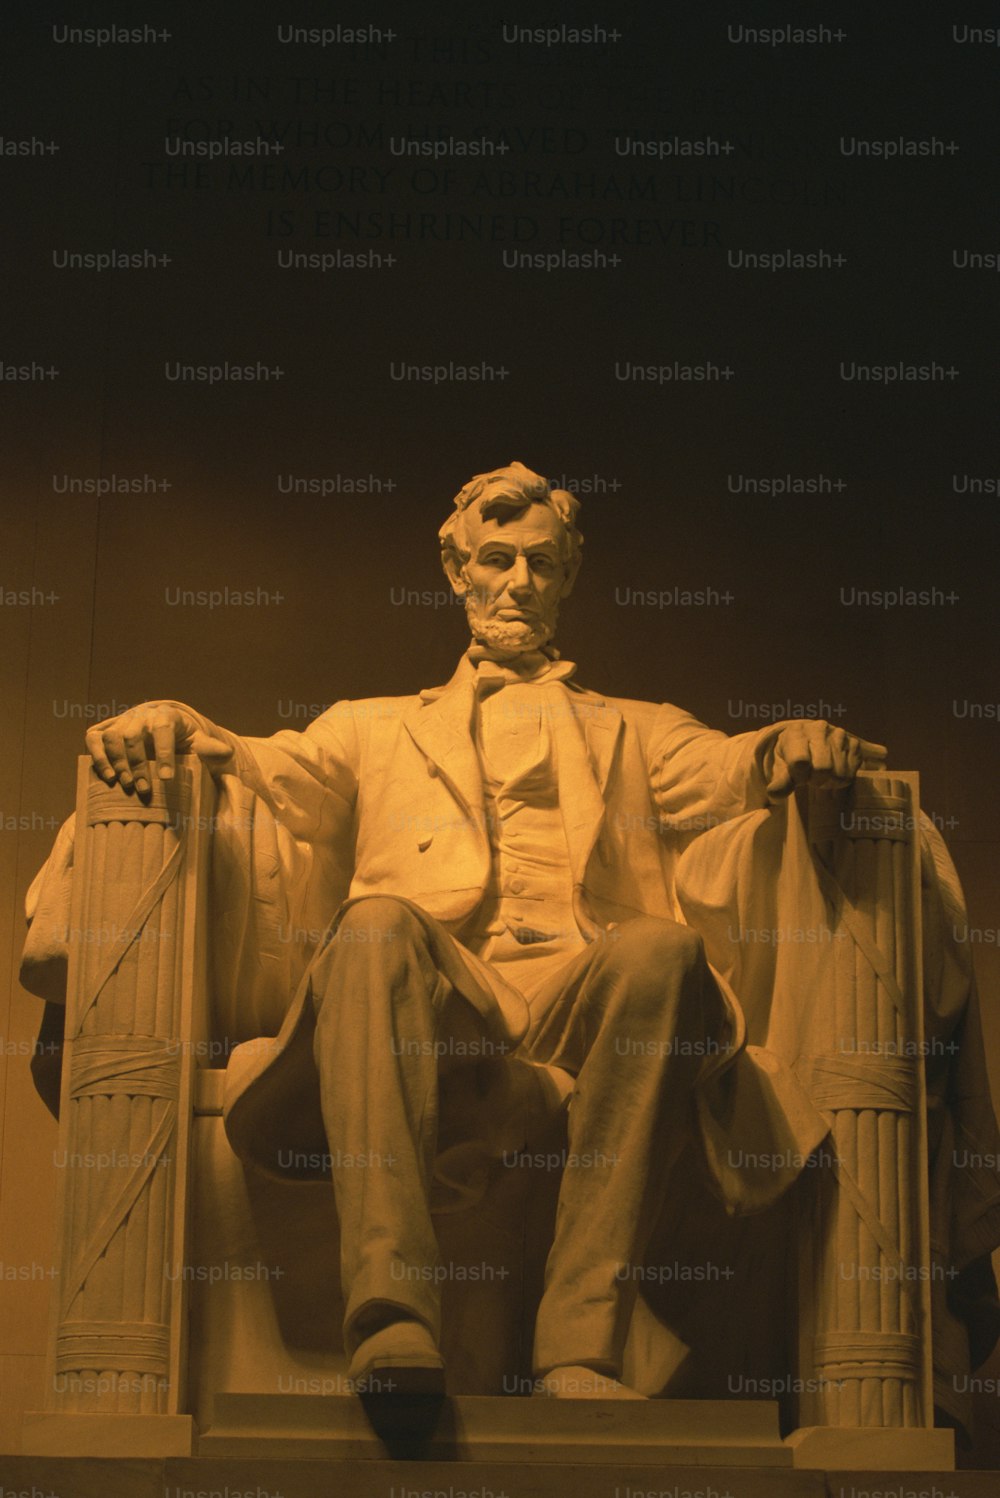 椅子に座っているエイブラハムリンカーンの像